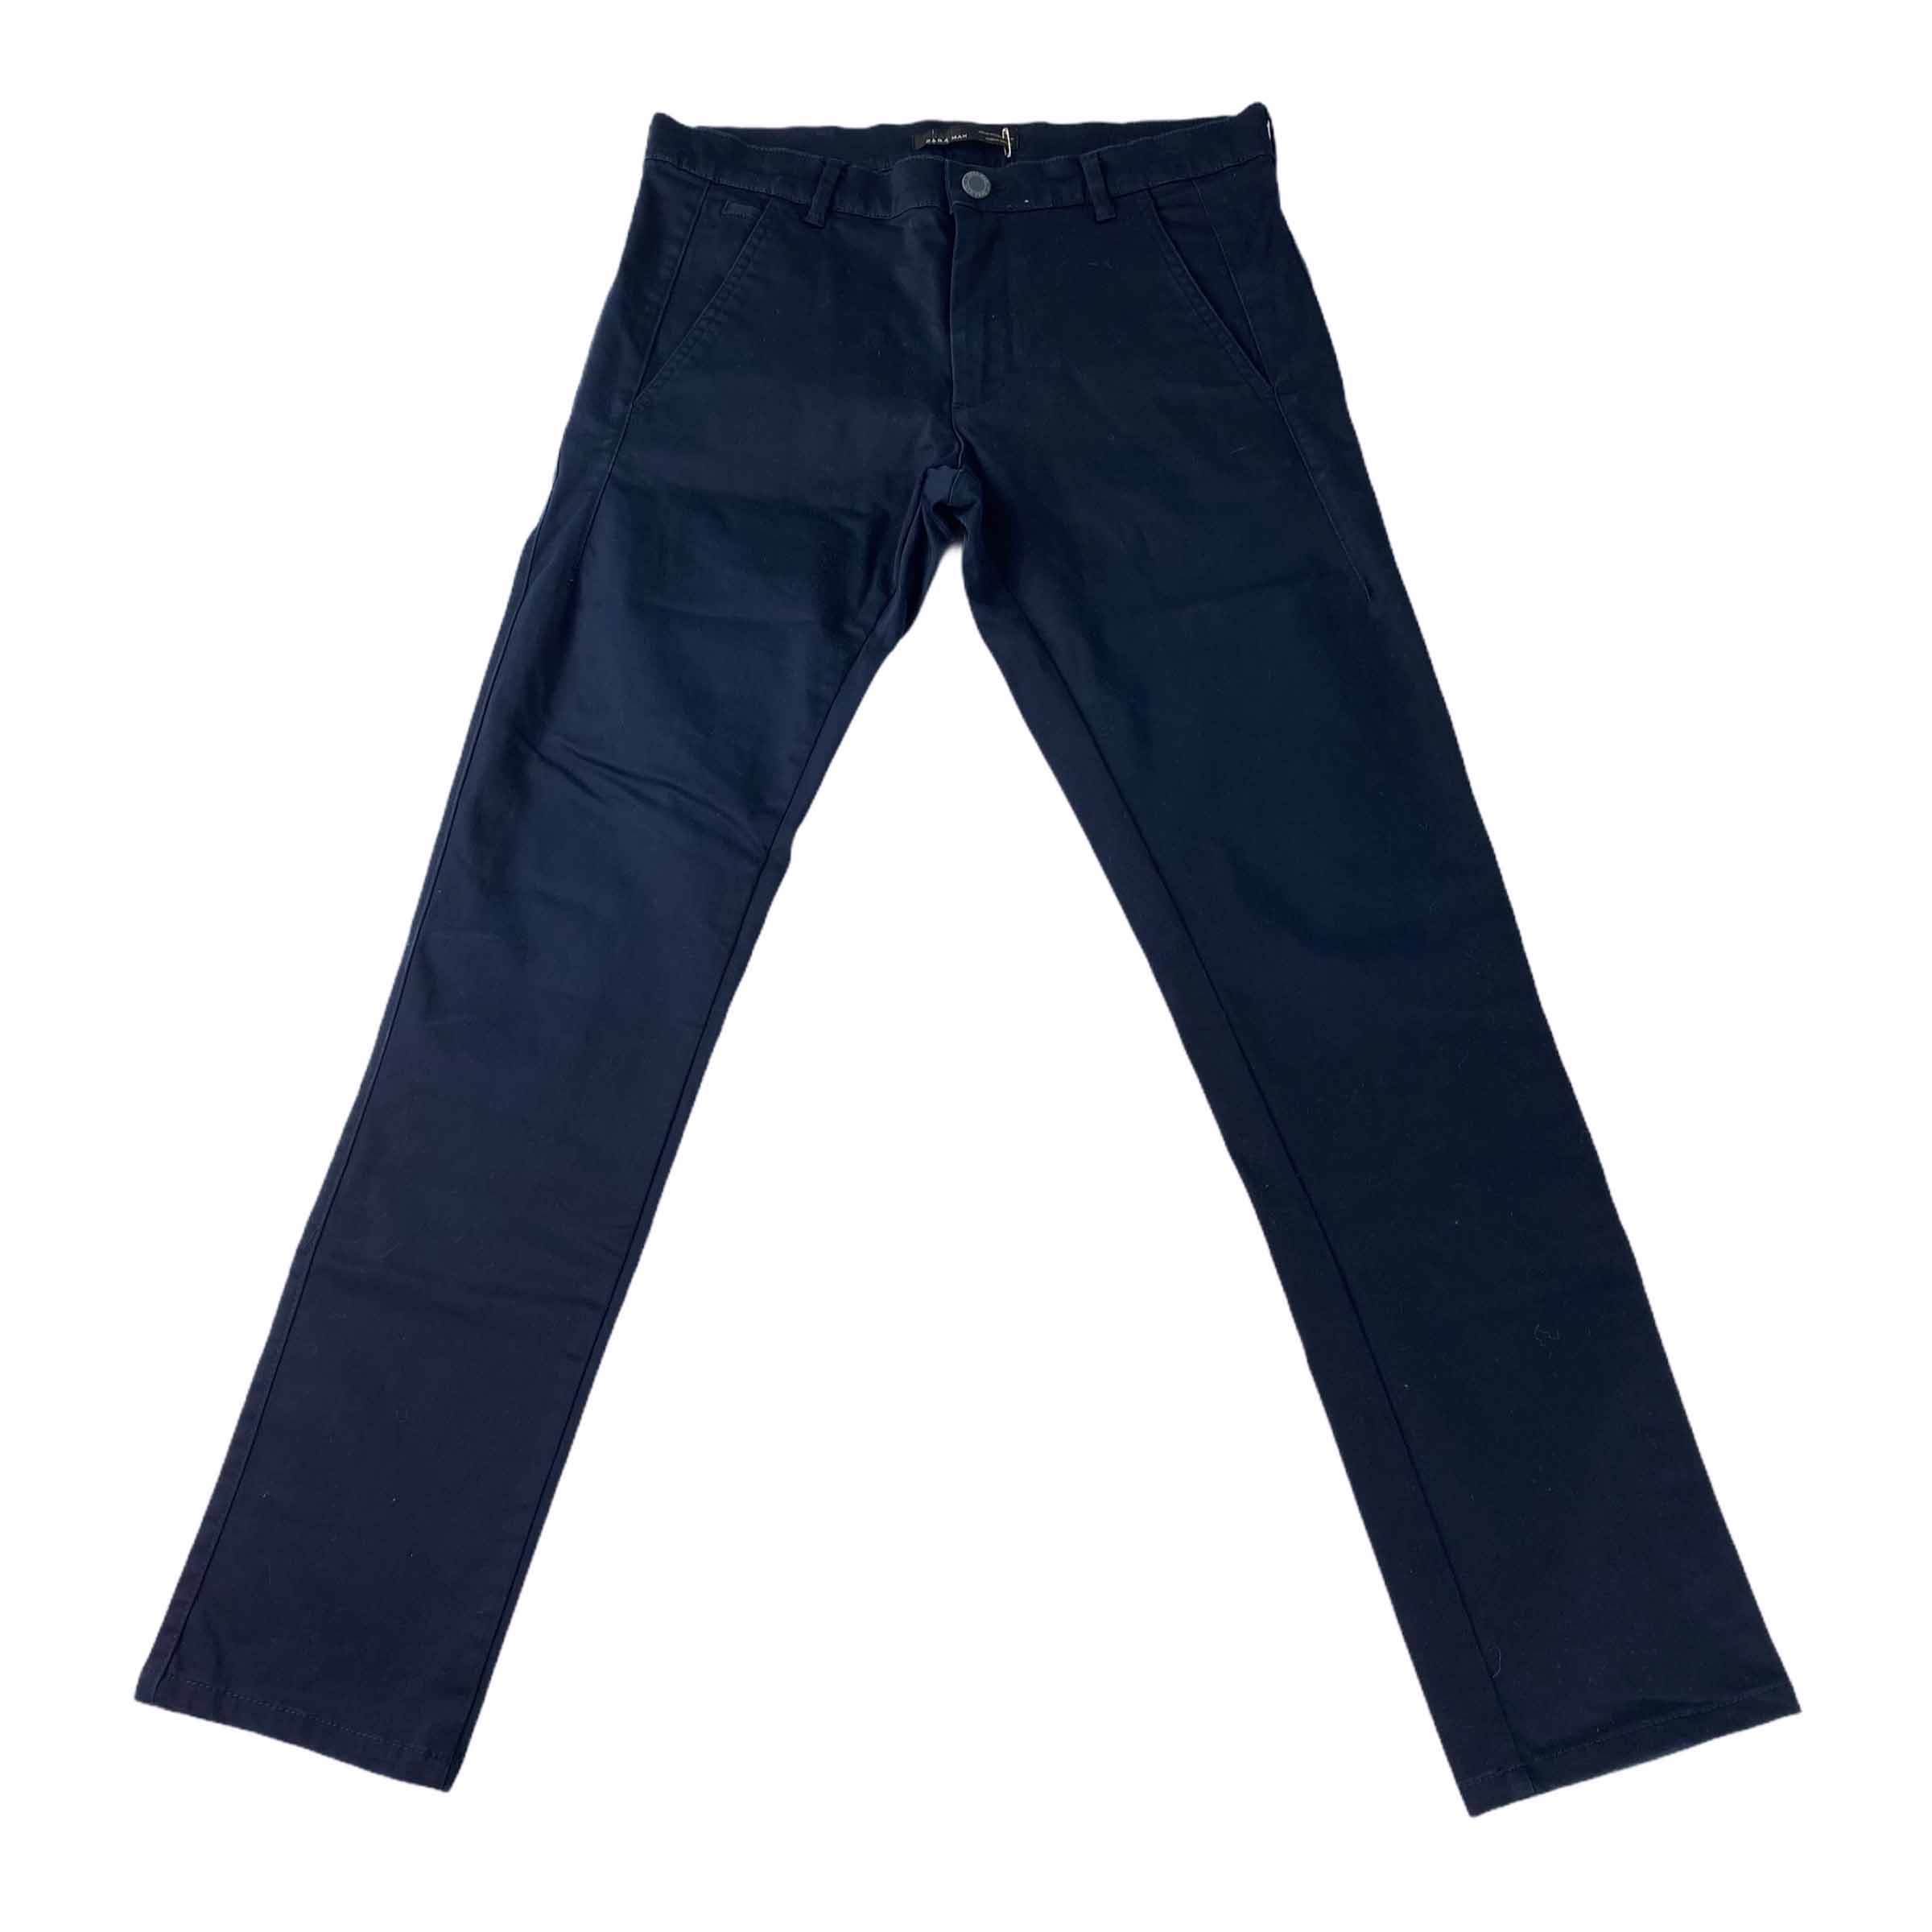 [Zara] Basic Navy Cotton Pants - Size 30